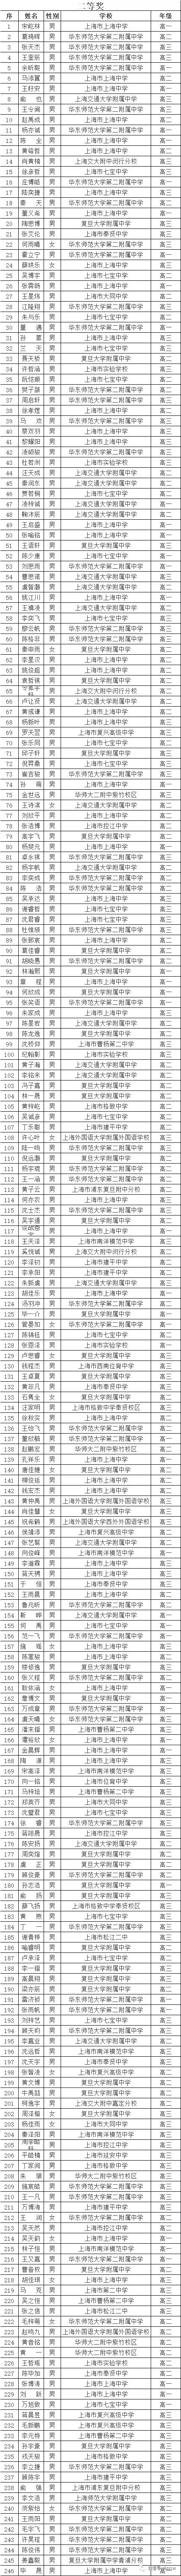 上海市2020年全国高中数学联赛省二246人获奖名单